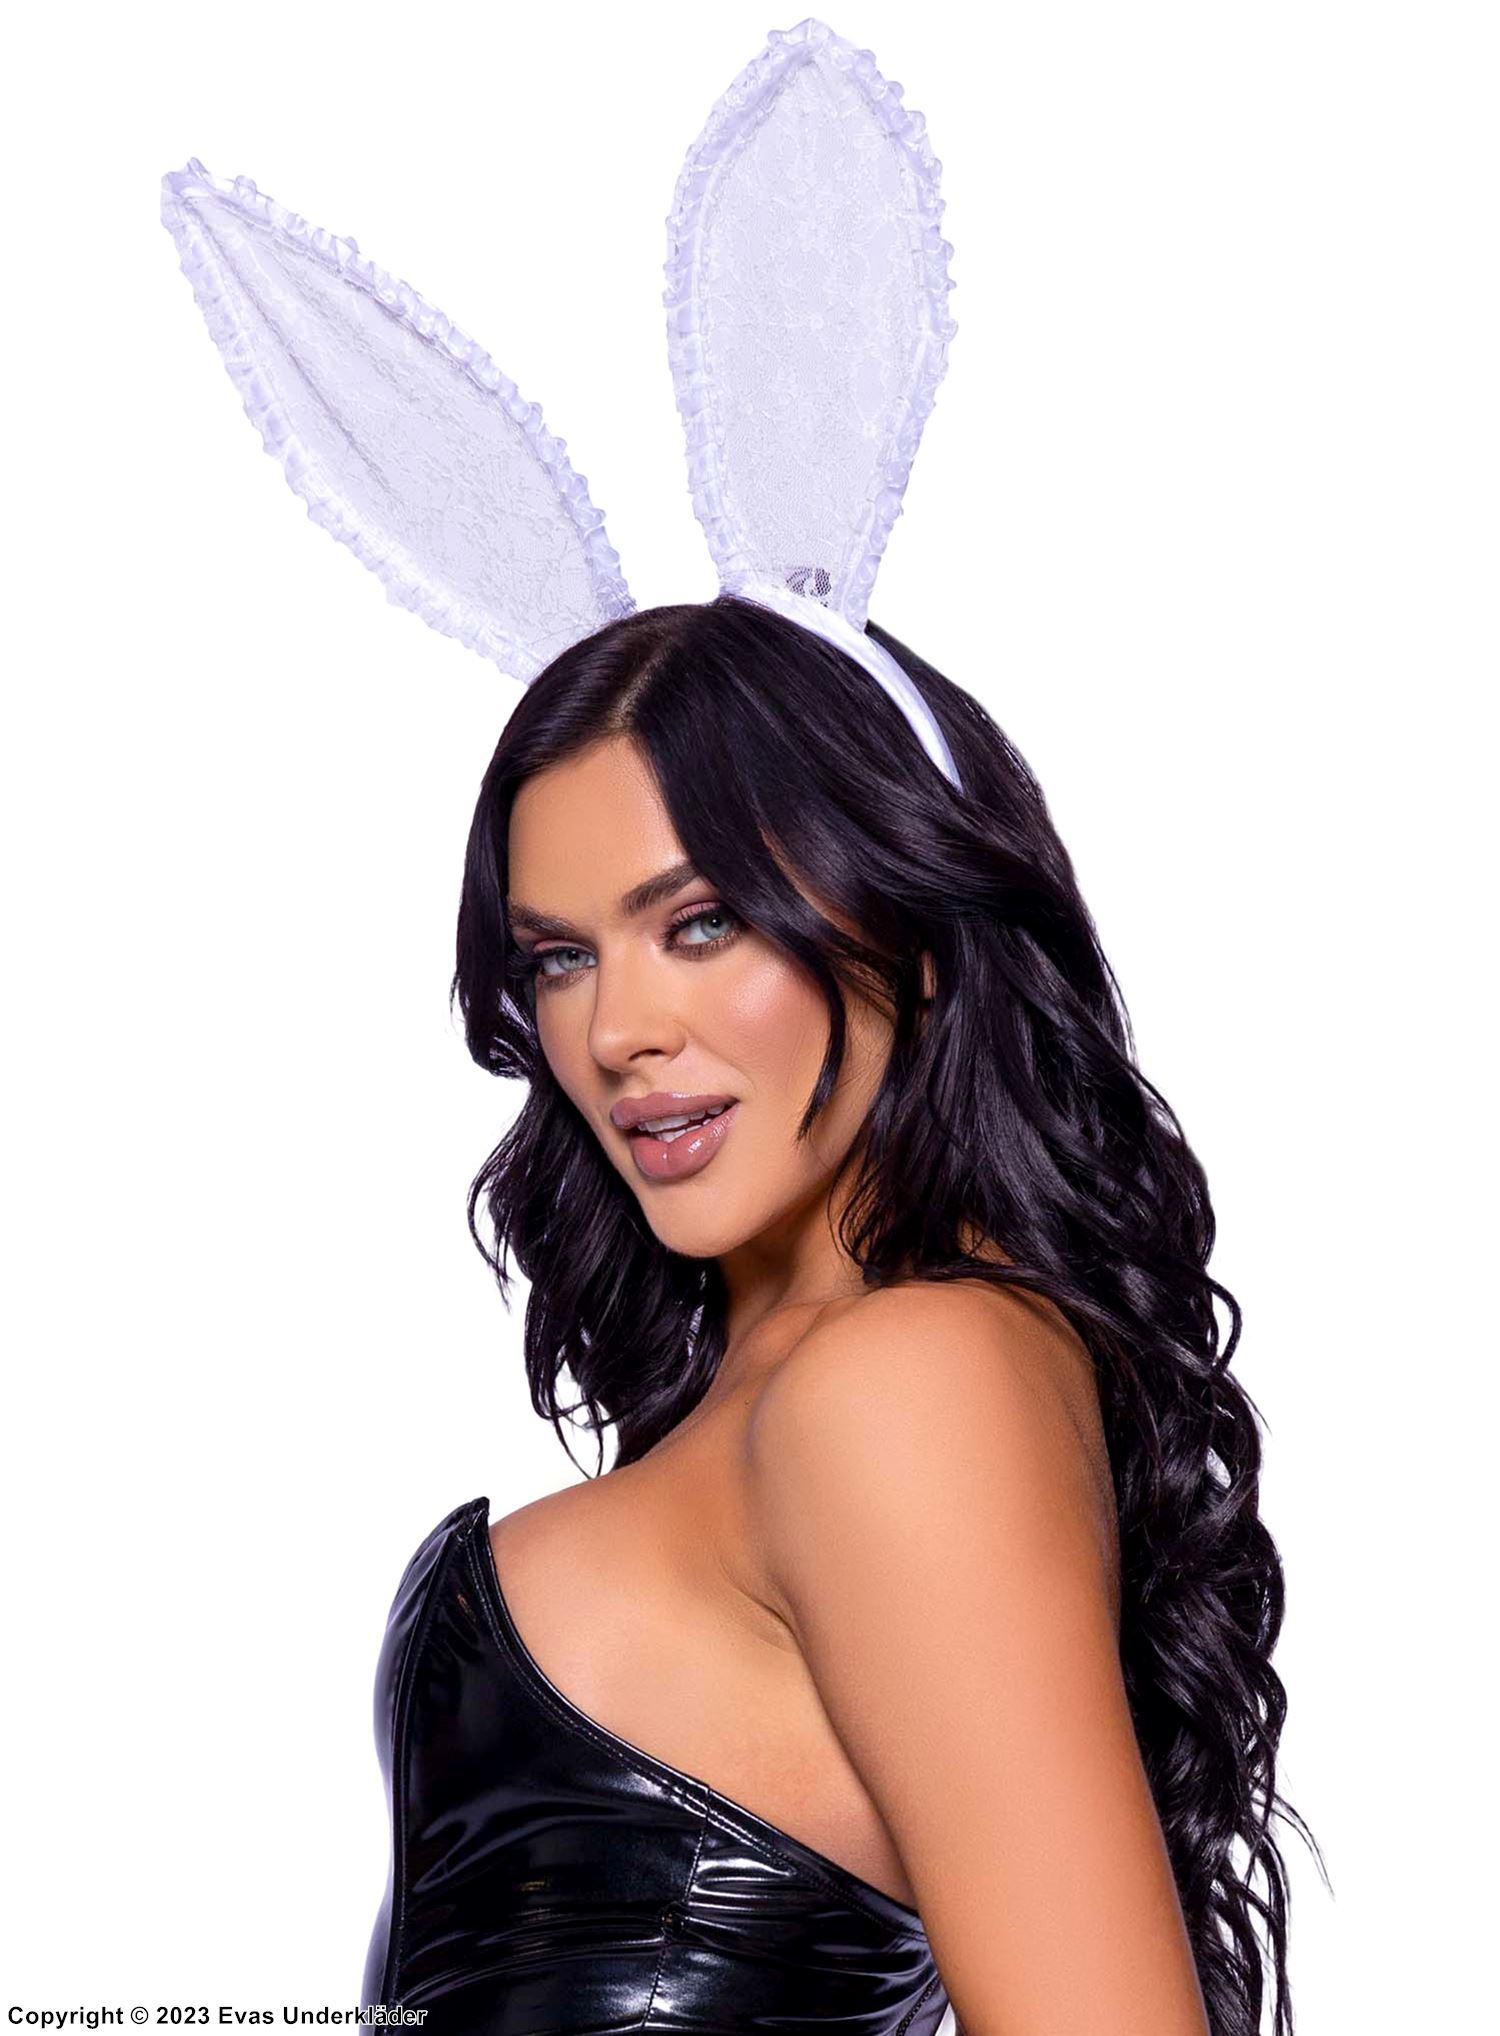 Playboy kanin, kostyme-hodeplagg, blomsterblonder, store ører